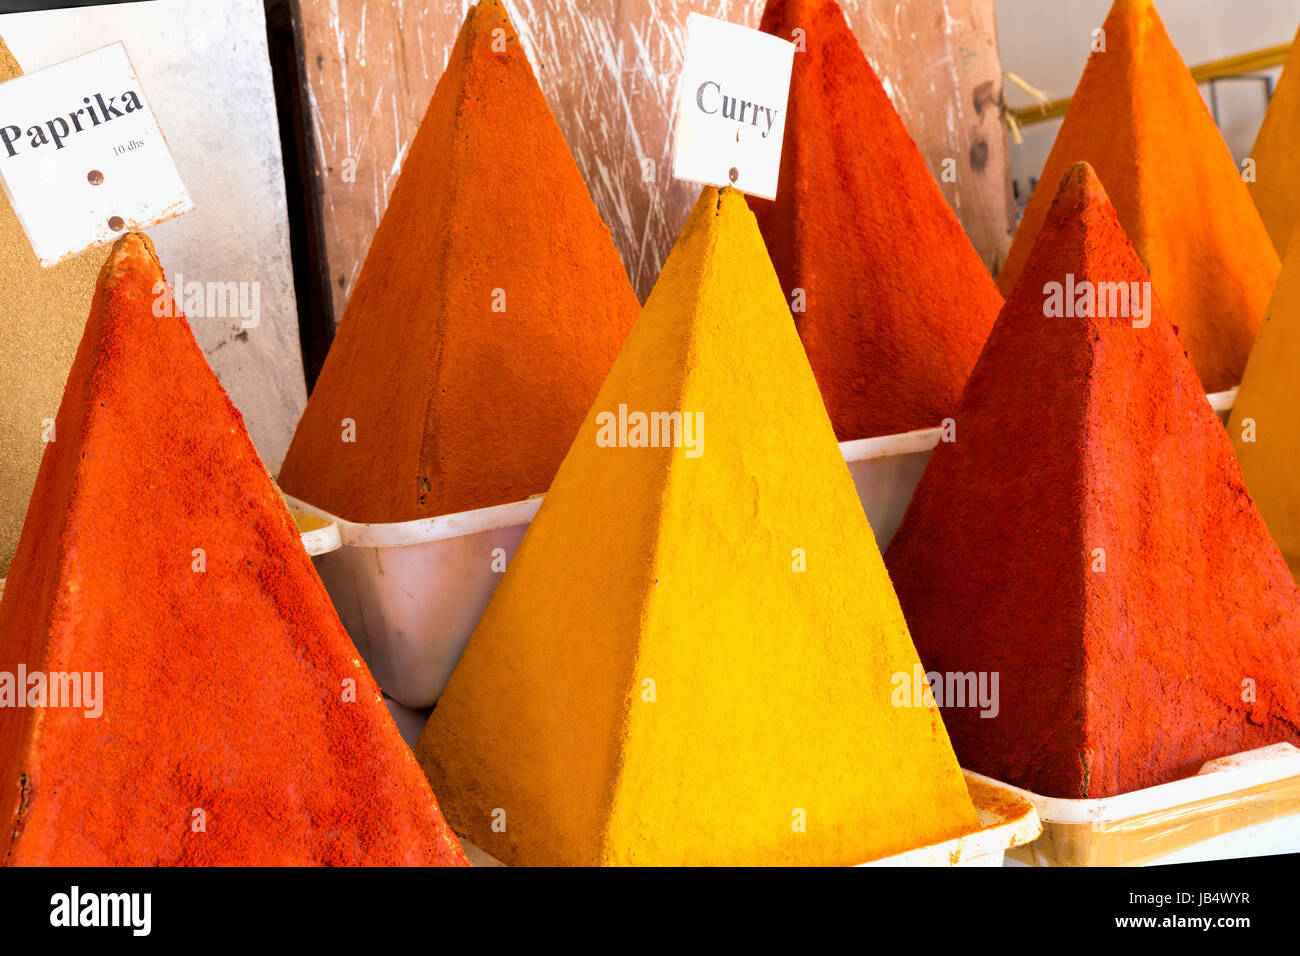 Gewürze auf einem Markt in Marokko Stock Photo